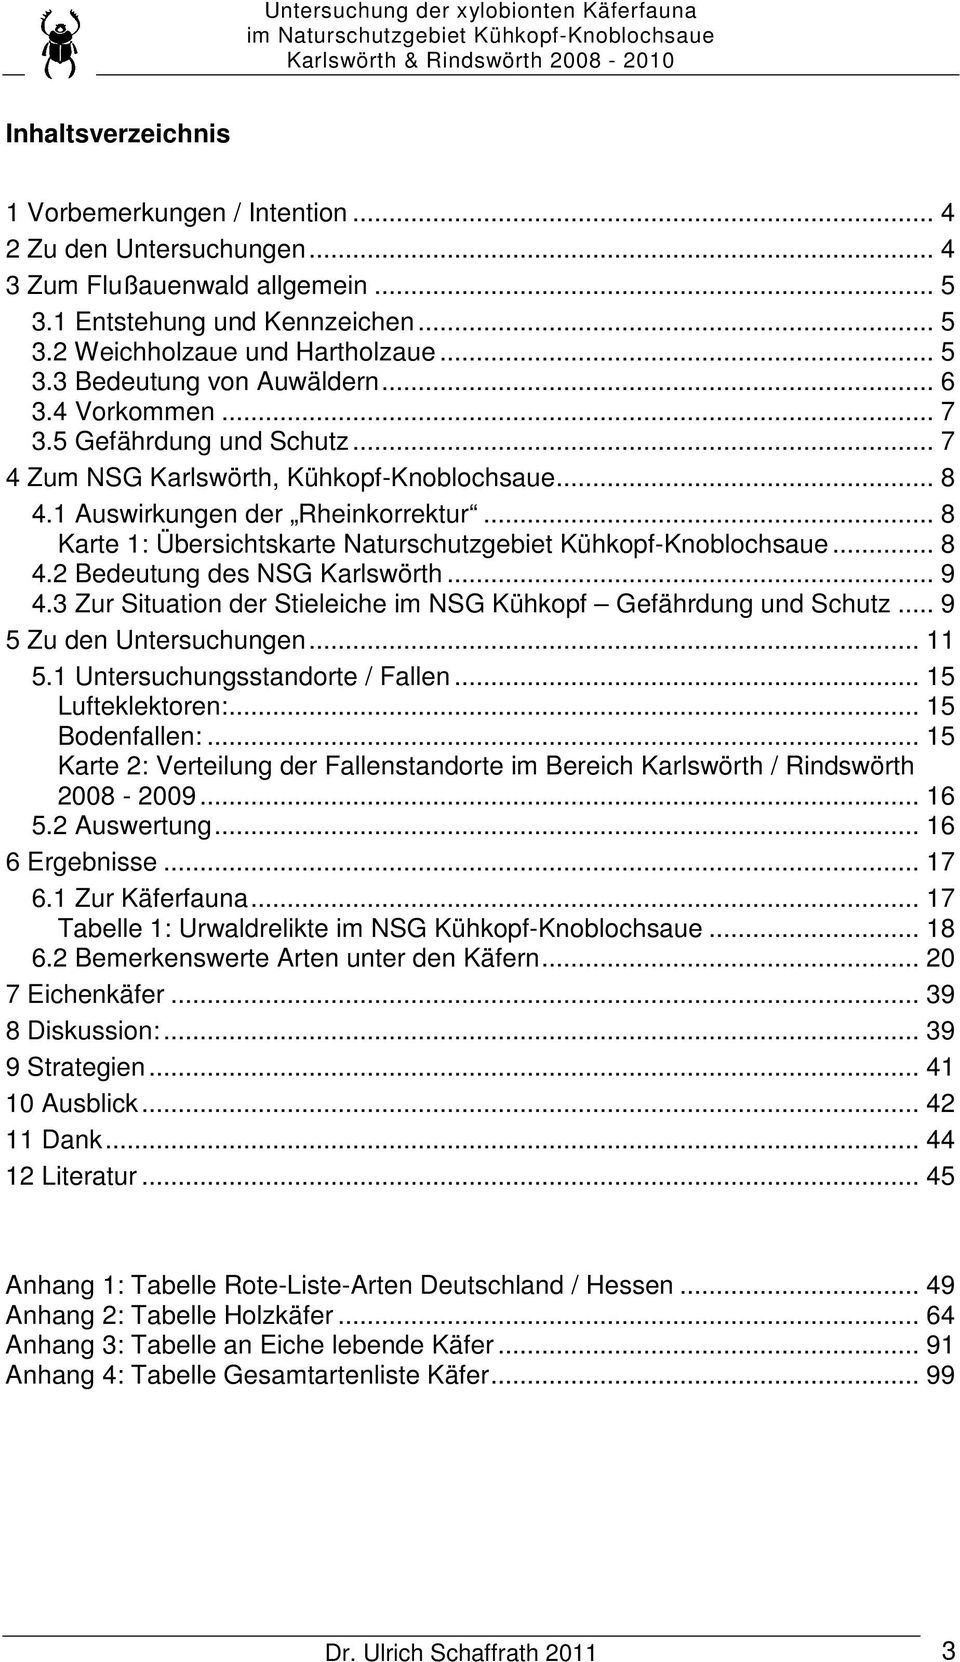 .. 7 4 Zum NSG Karlswörth, Kühkopf-Knoblochsaue... 8 4.1 Auswirkungen der Rheinkorrektur... 8 Karte 1: Übersichtskarte Naturschutzgebiet Kühkopf-Knoblochsaue... 8 4.2 Bedeutung des NSG Karlswörth.